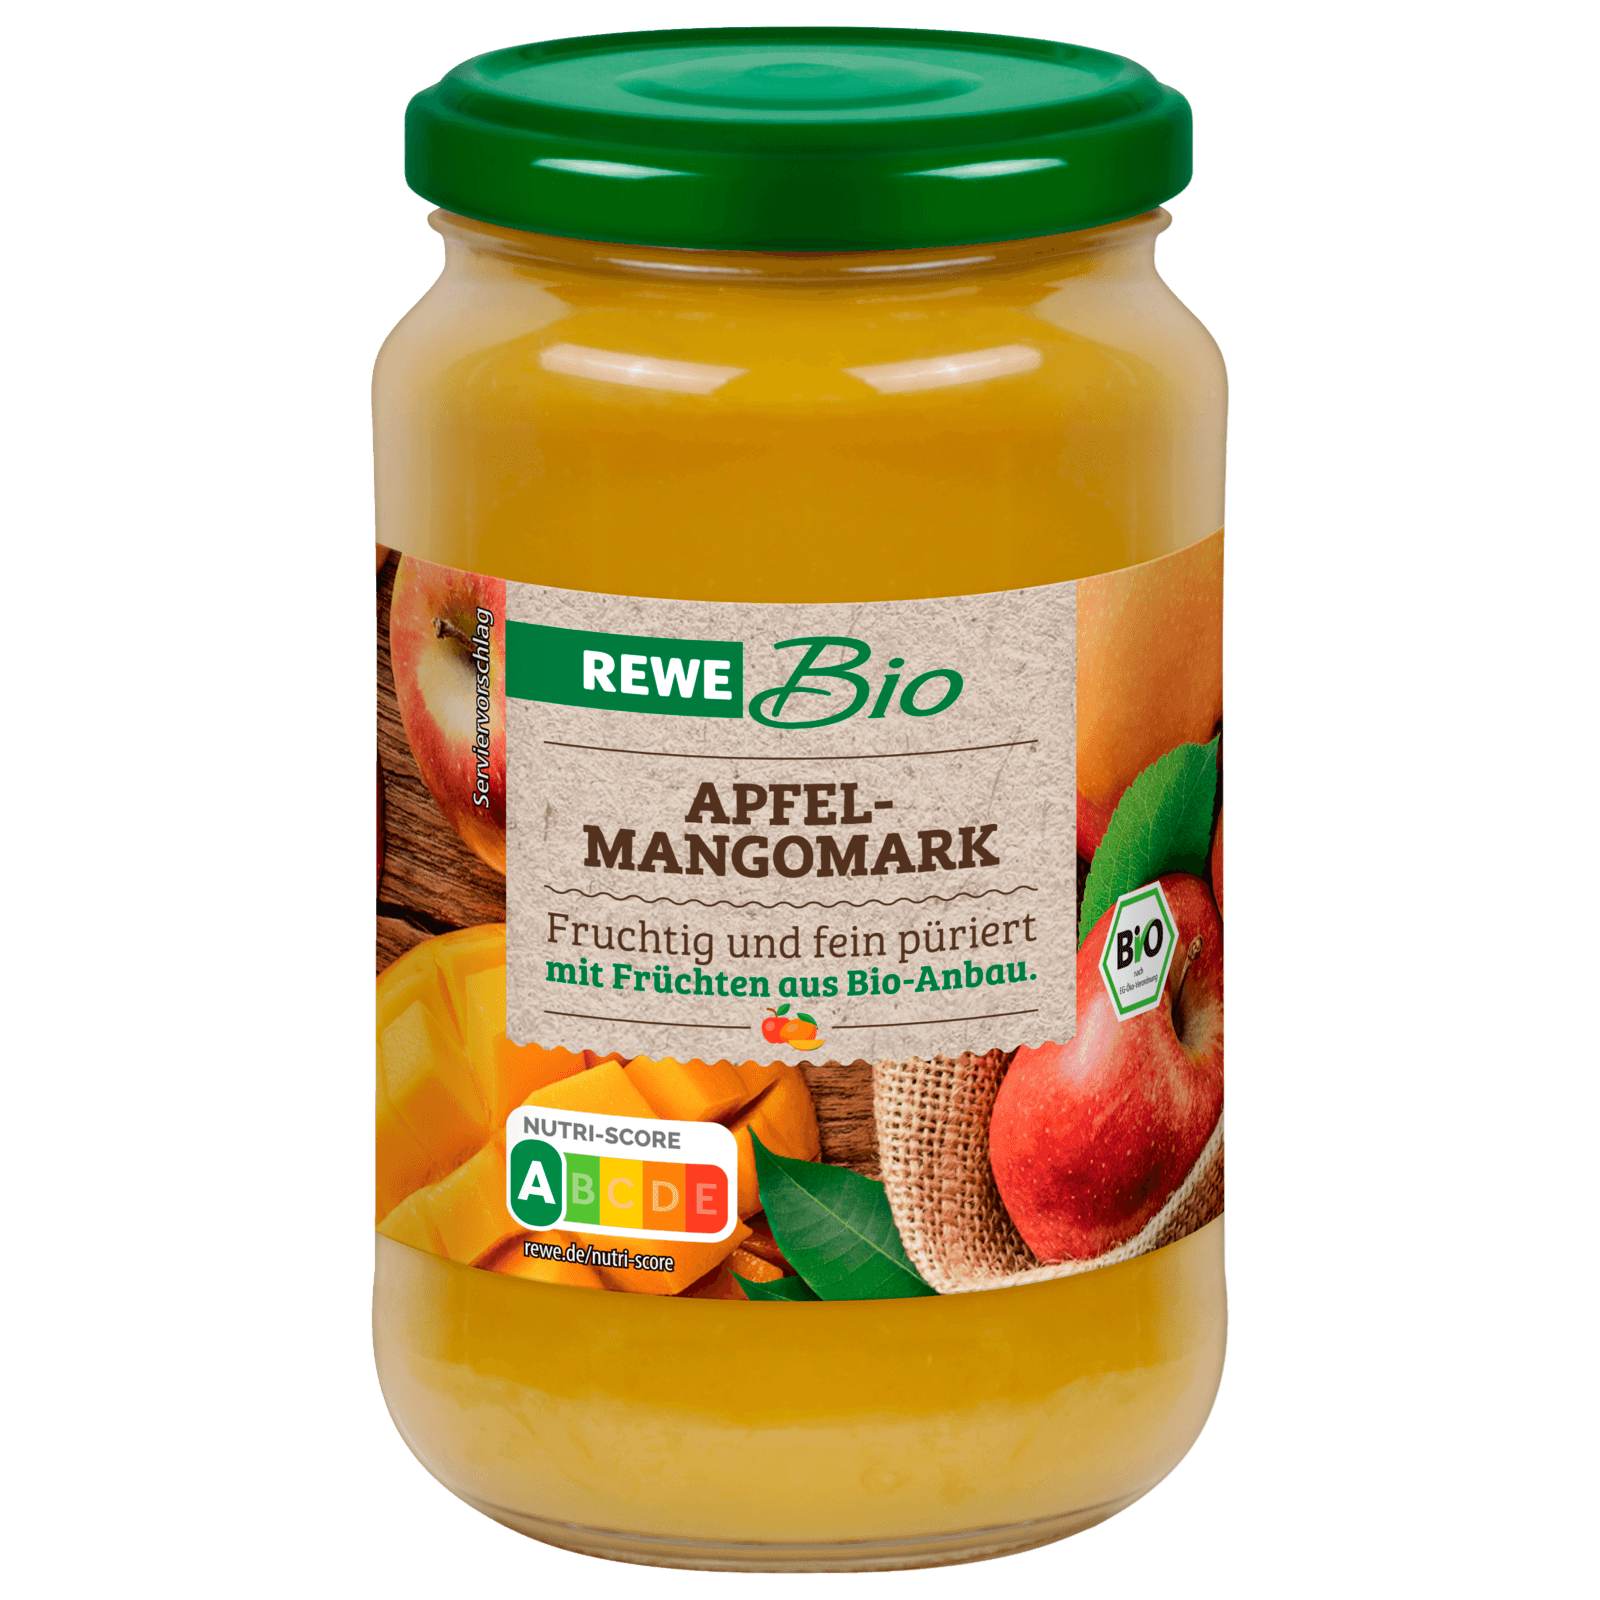 REWE Bio Apfel-Mangomark 360g  für 1.79 EUR